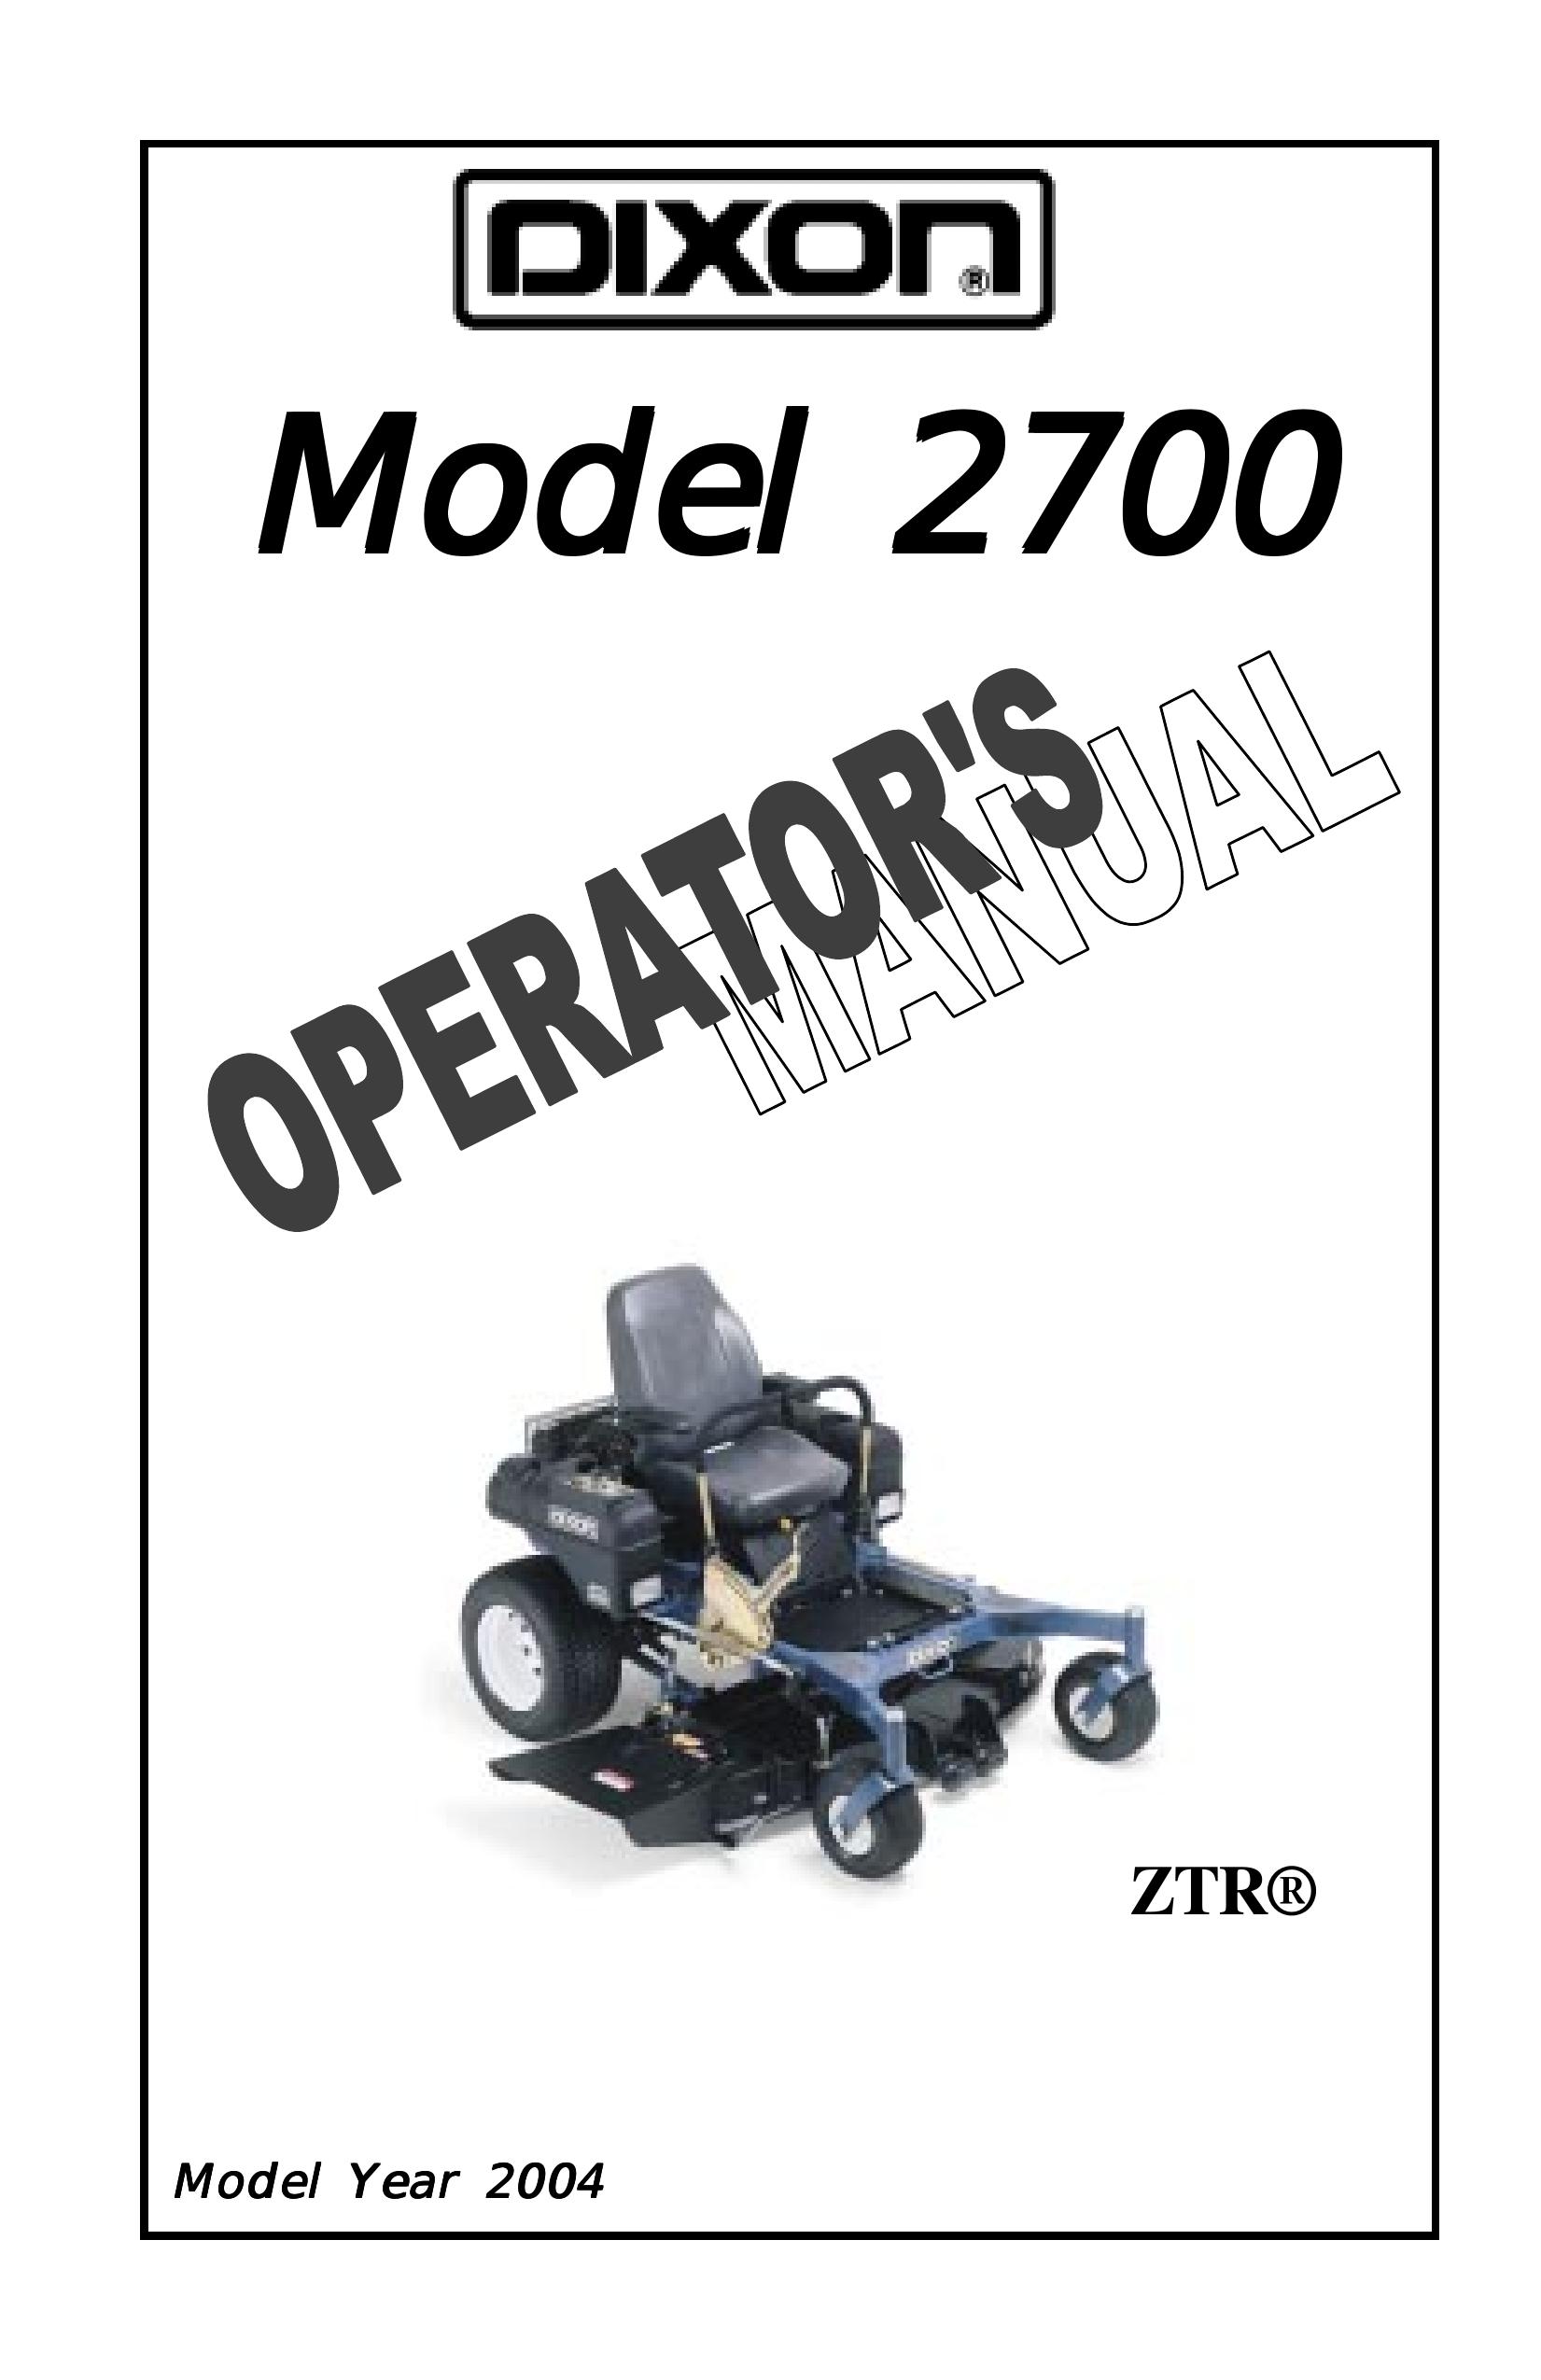 Dixon 12828-0603 Lawn Mower User Manual